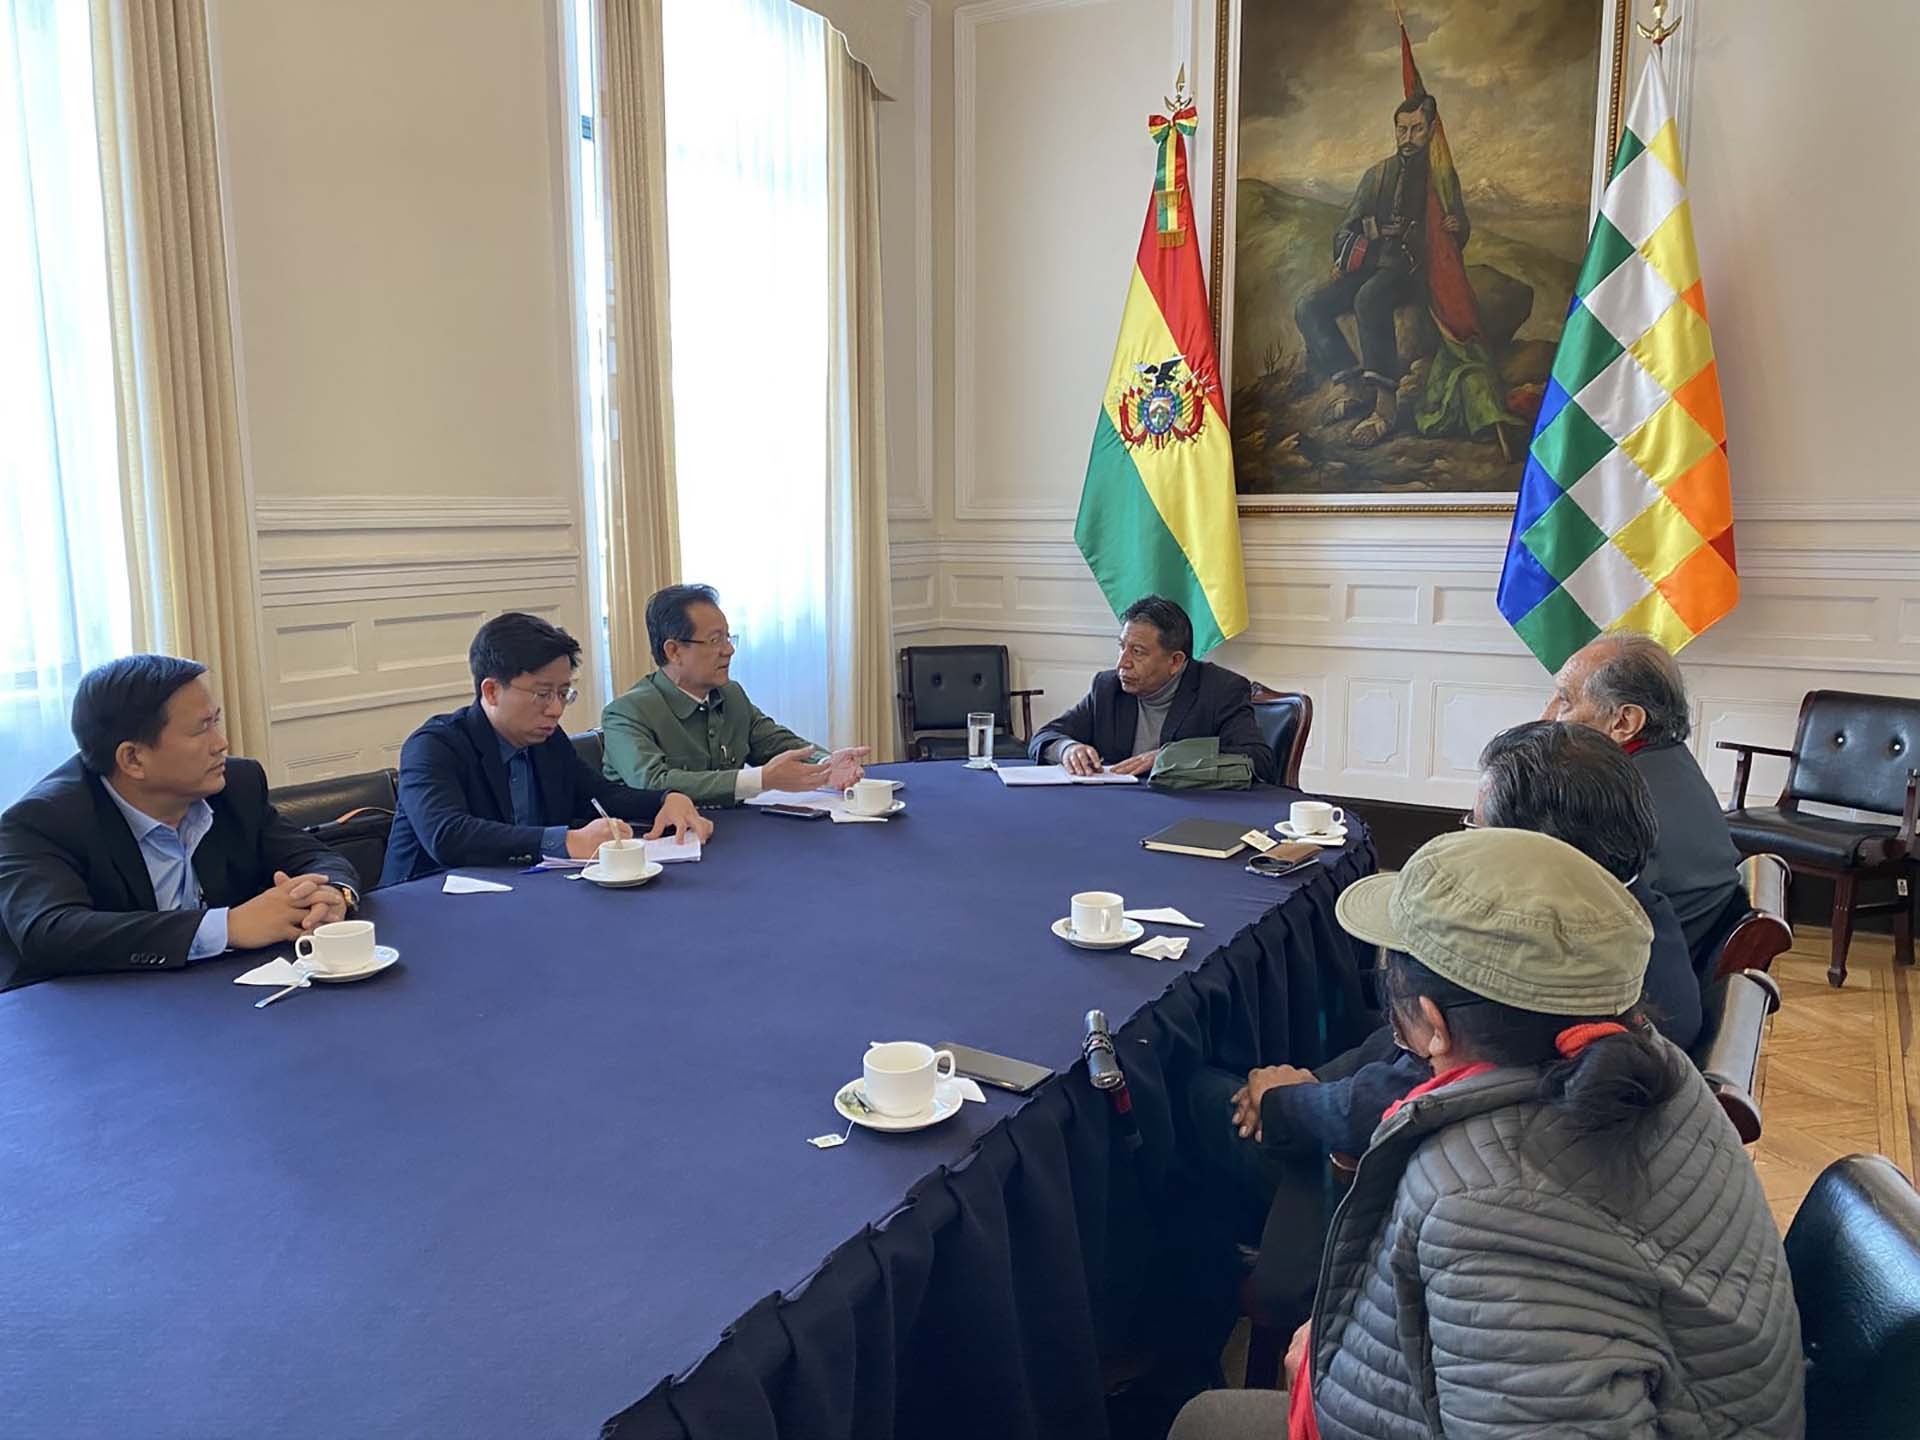 Đoàn đại biểu Đảng Cộng sản Việt Nam thăm, làm việc tại Bolivia